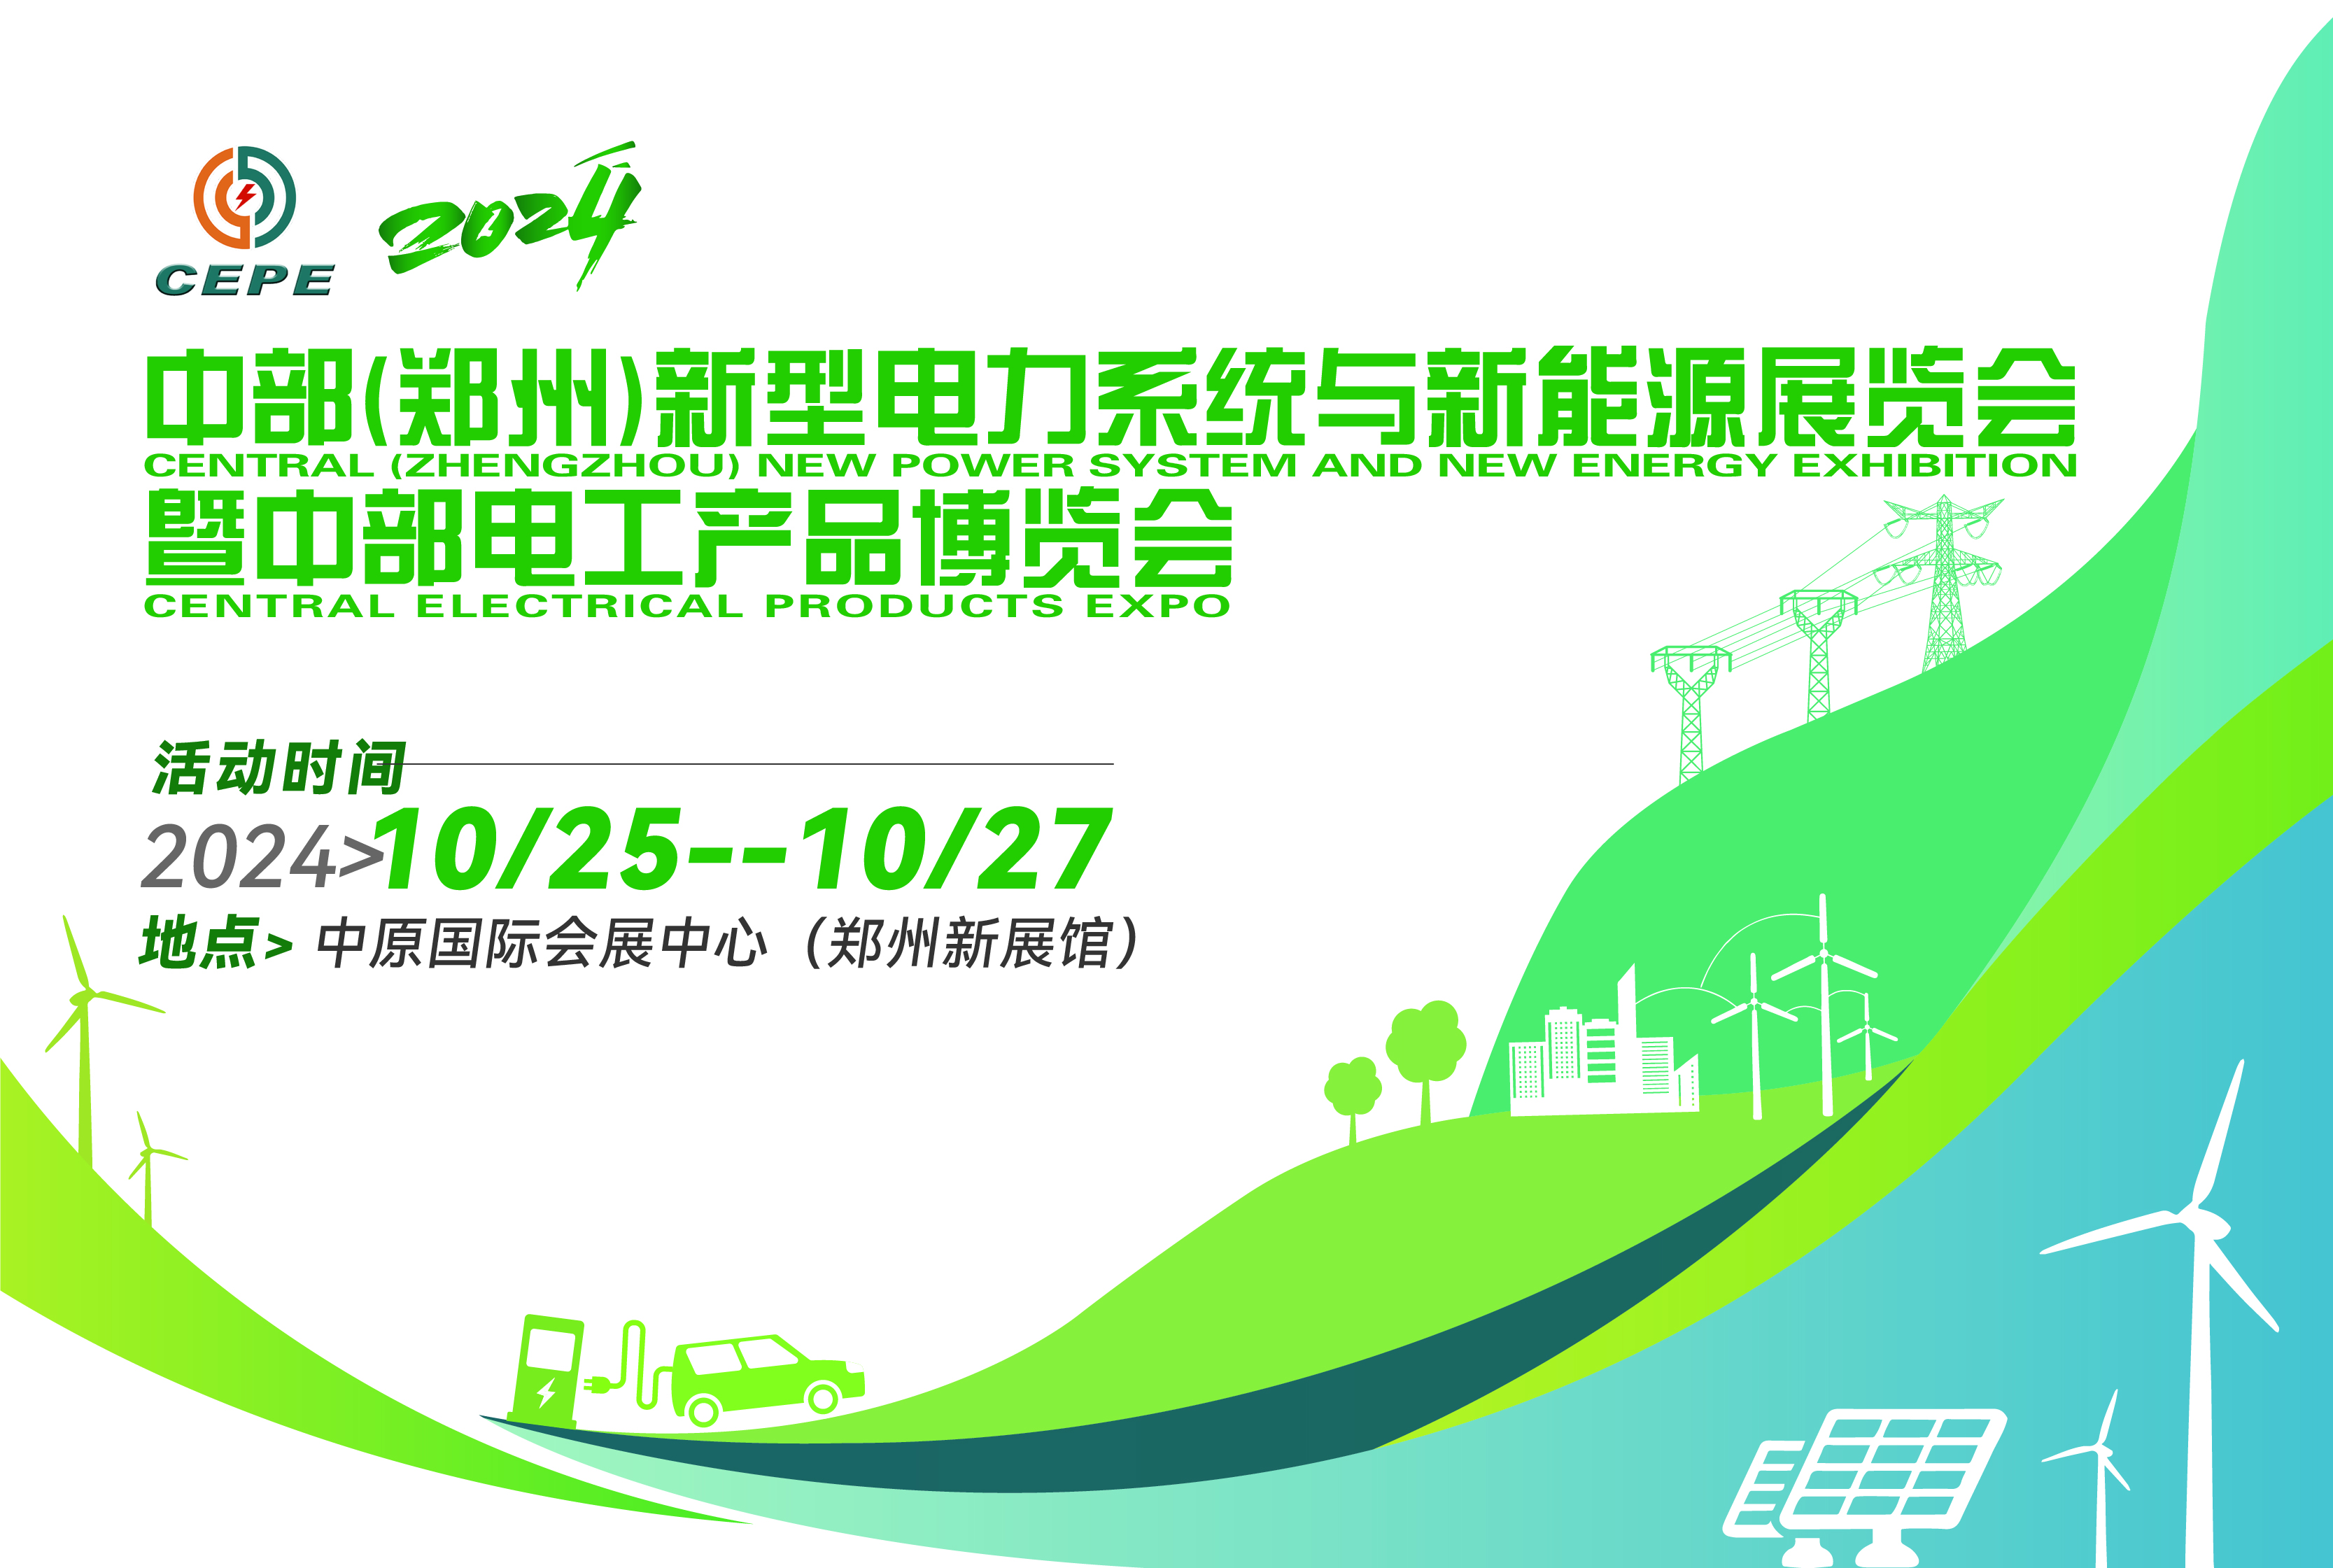 2024中部（郑州）新型电力系统与新能源展览会暨中部电工产品博览会